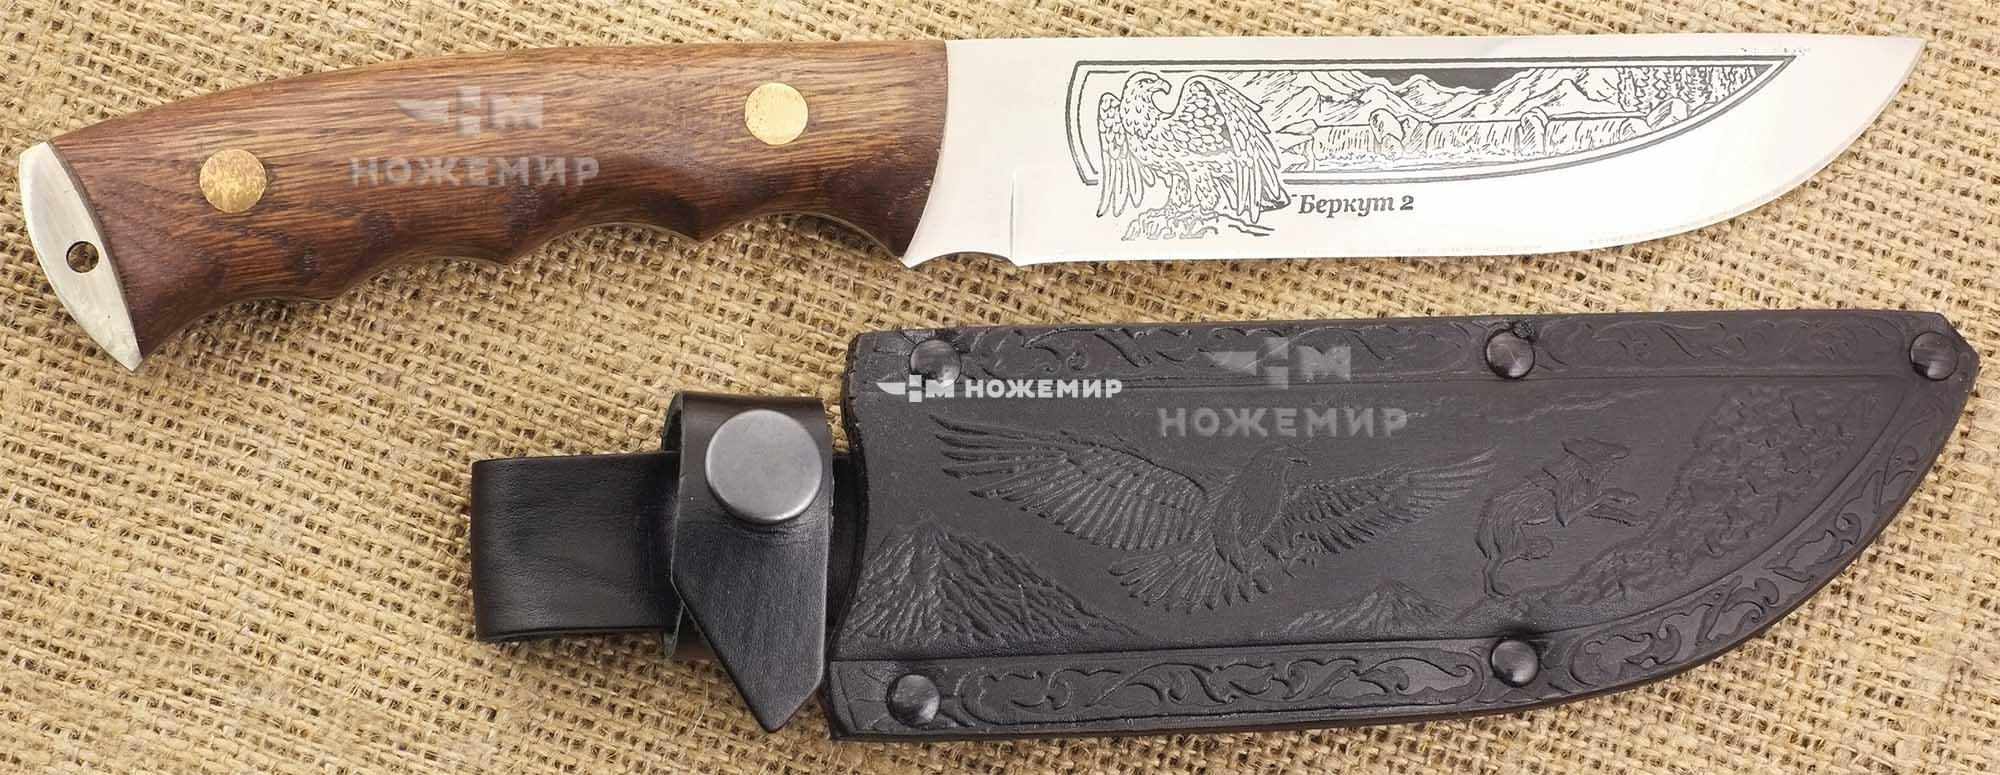 Нож нескладной Кизлярский БЕРКУТ2-ЦМ (6345) с кожаными ножнами